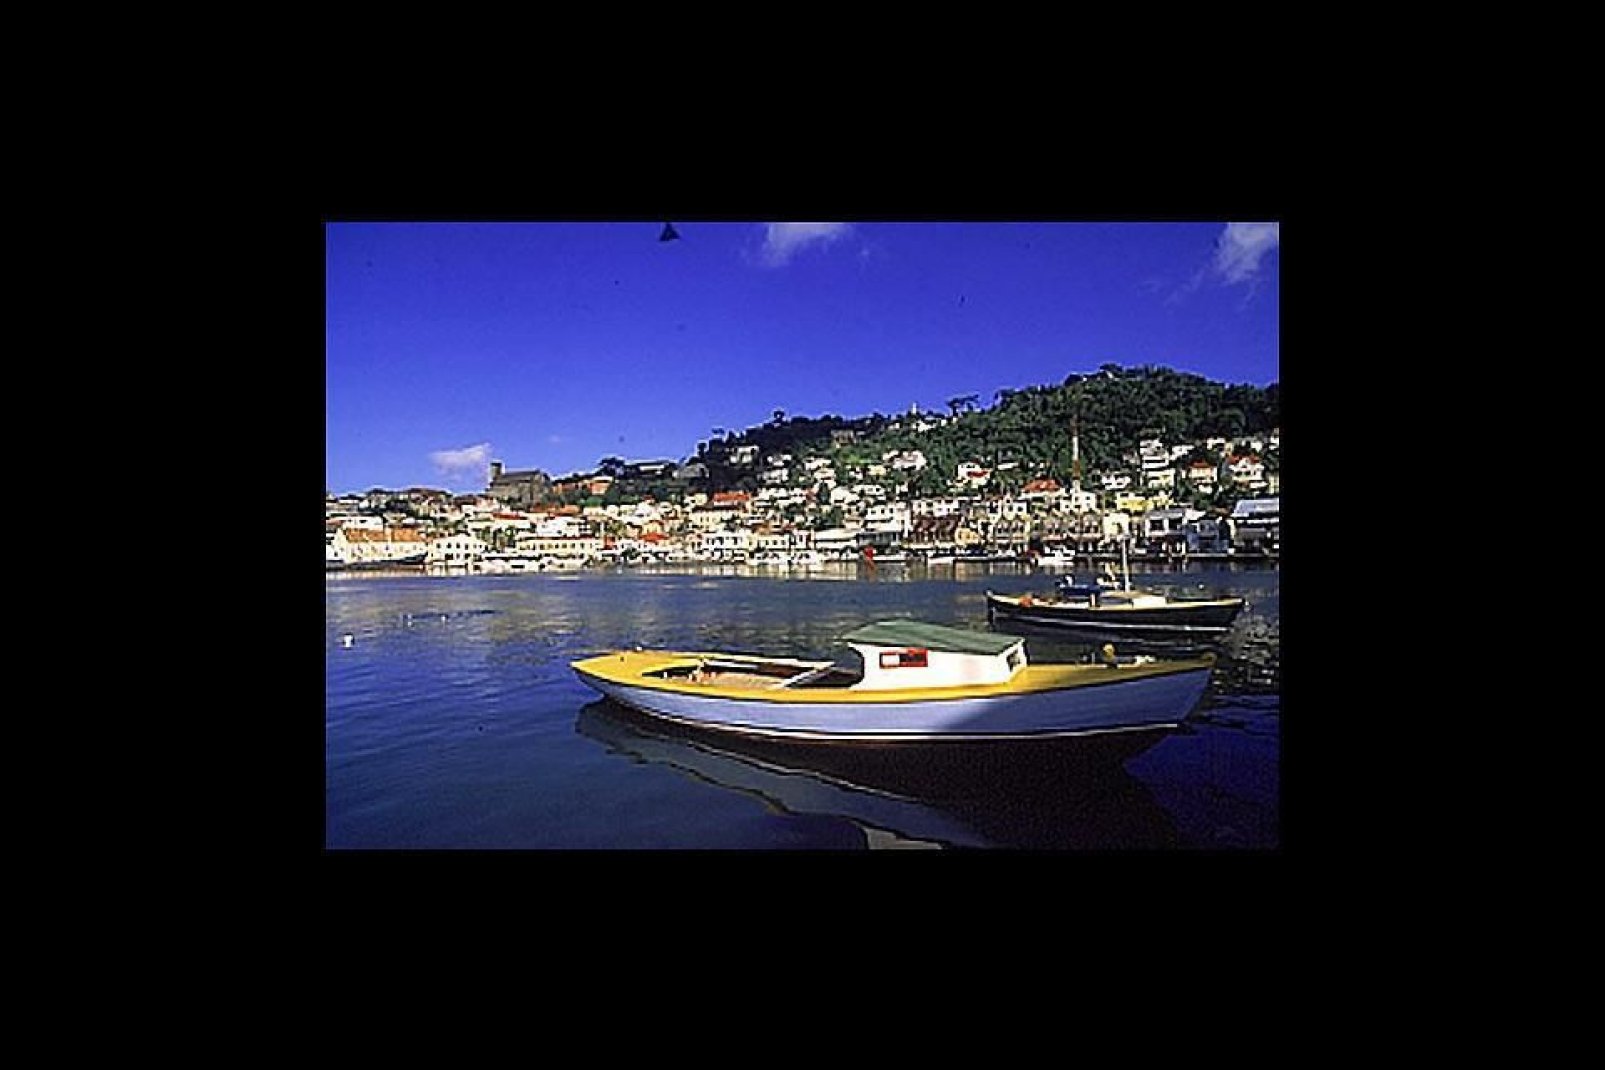 Saint George's, capitale di Grenada, fu fondata dai francesi. È ubicata nel sud dell'isola.